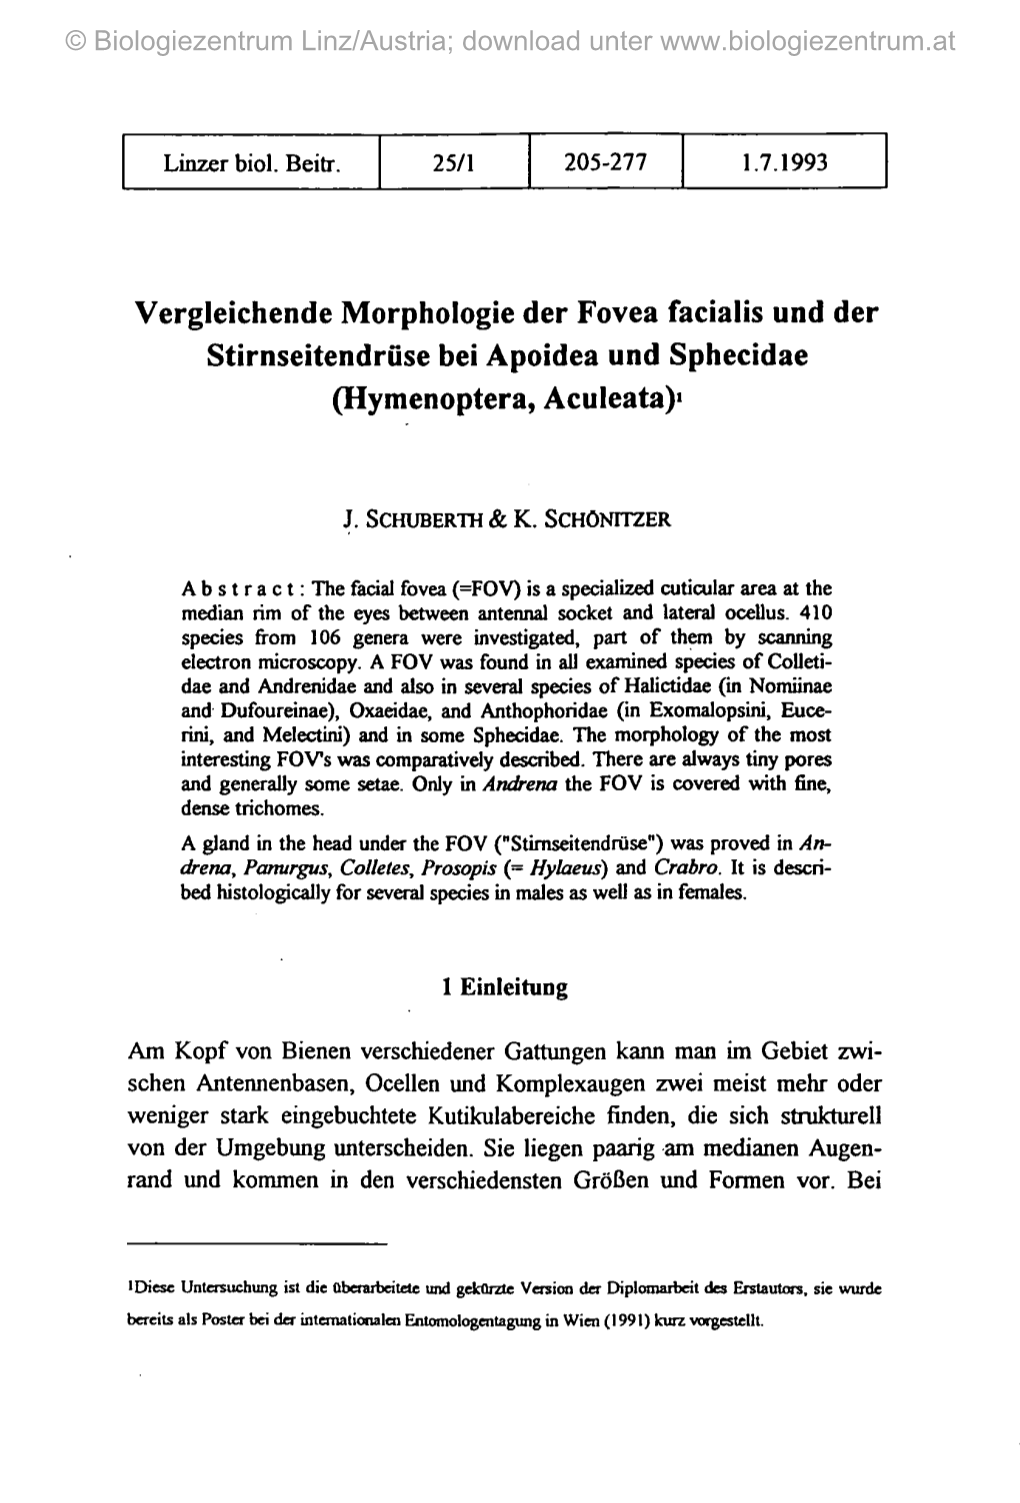 Vergleichende Morphologie Der Fovea Facialis Und Der Stirnseitendrüse Bei Apoidea Und Sphecidae (Hymenoptera, Aculeata)1